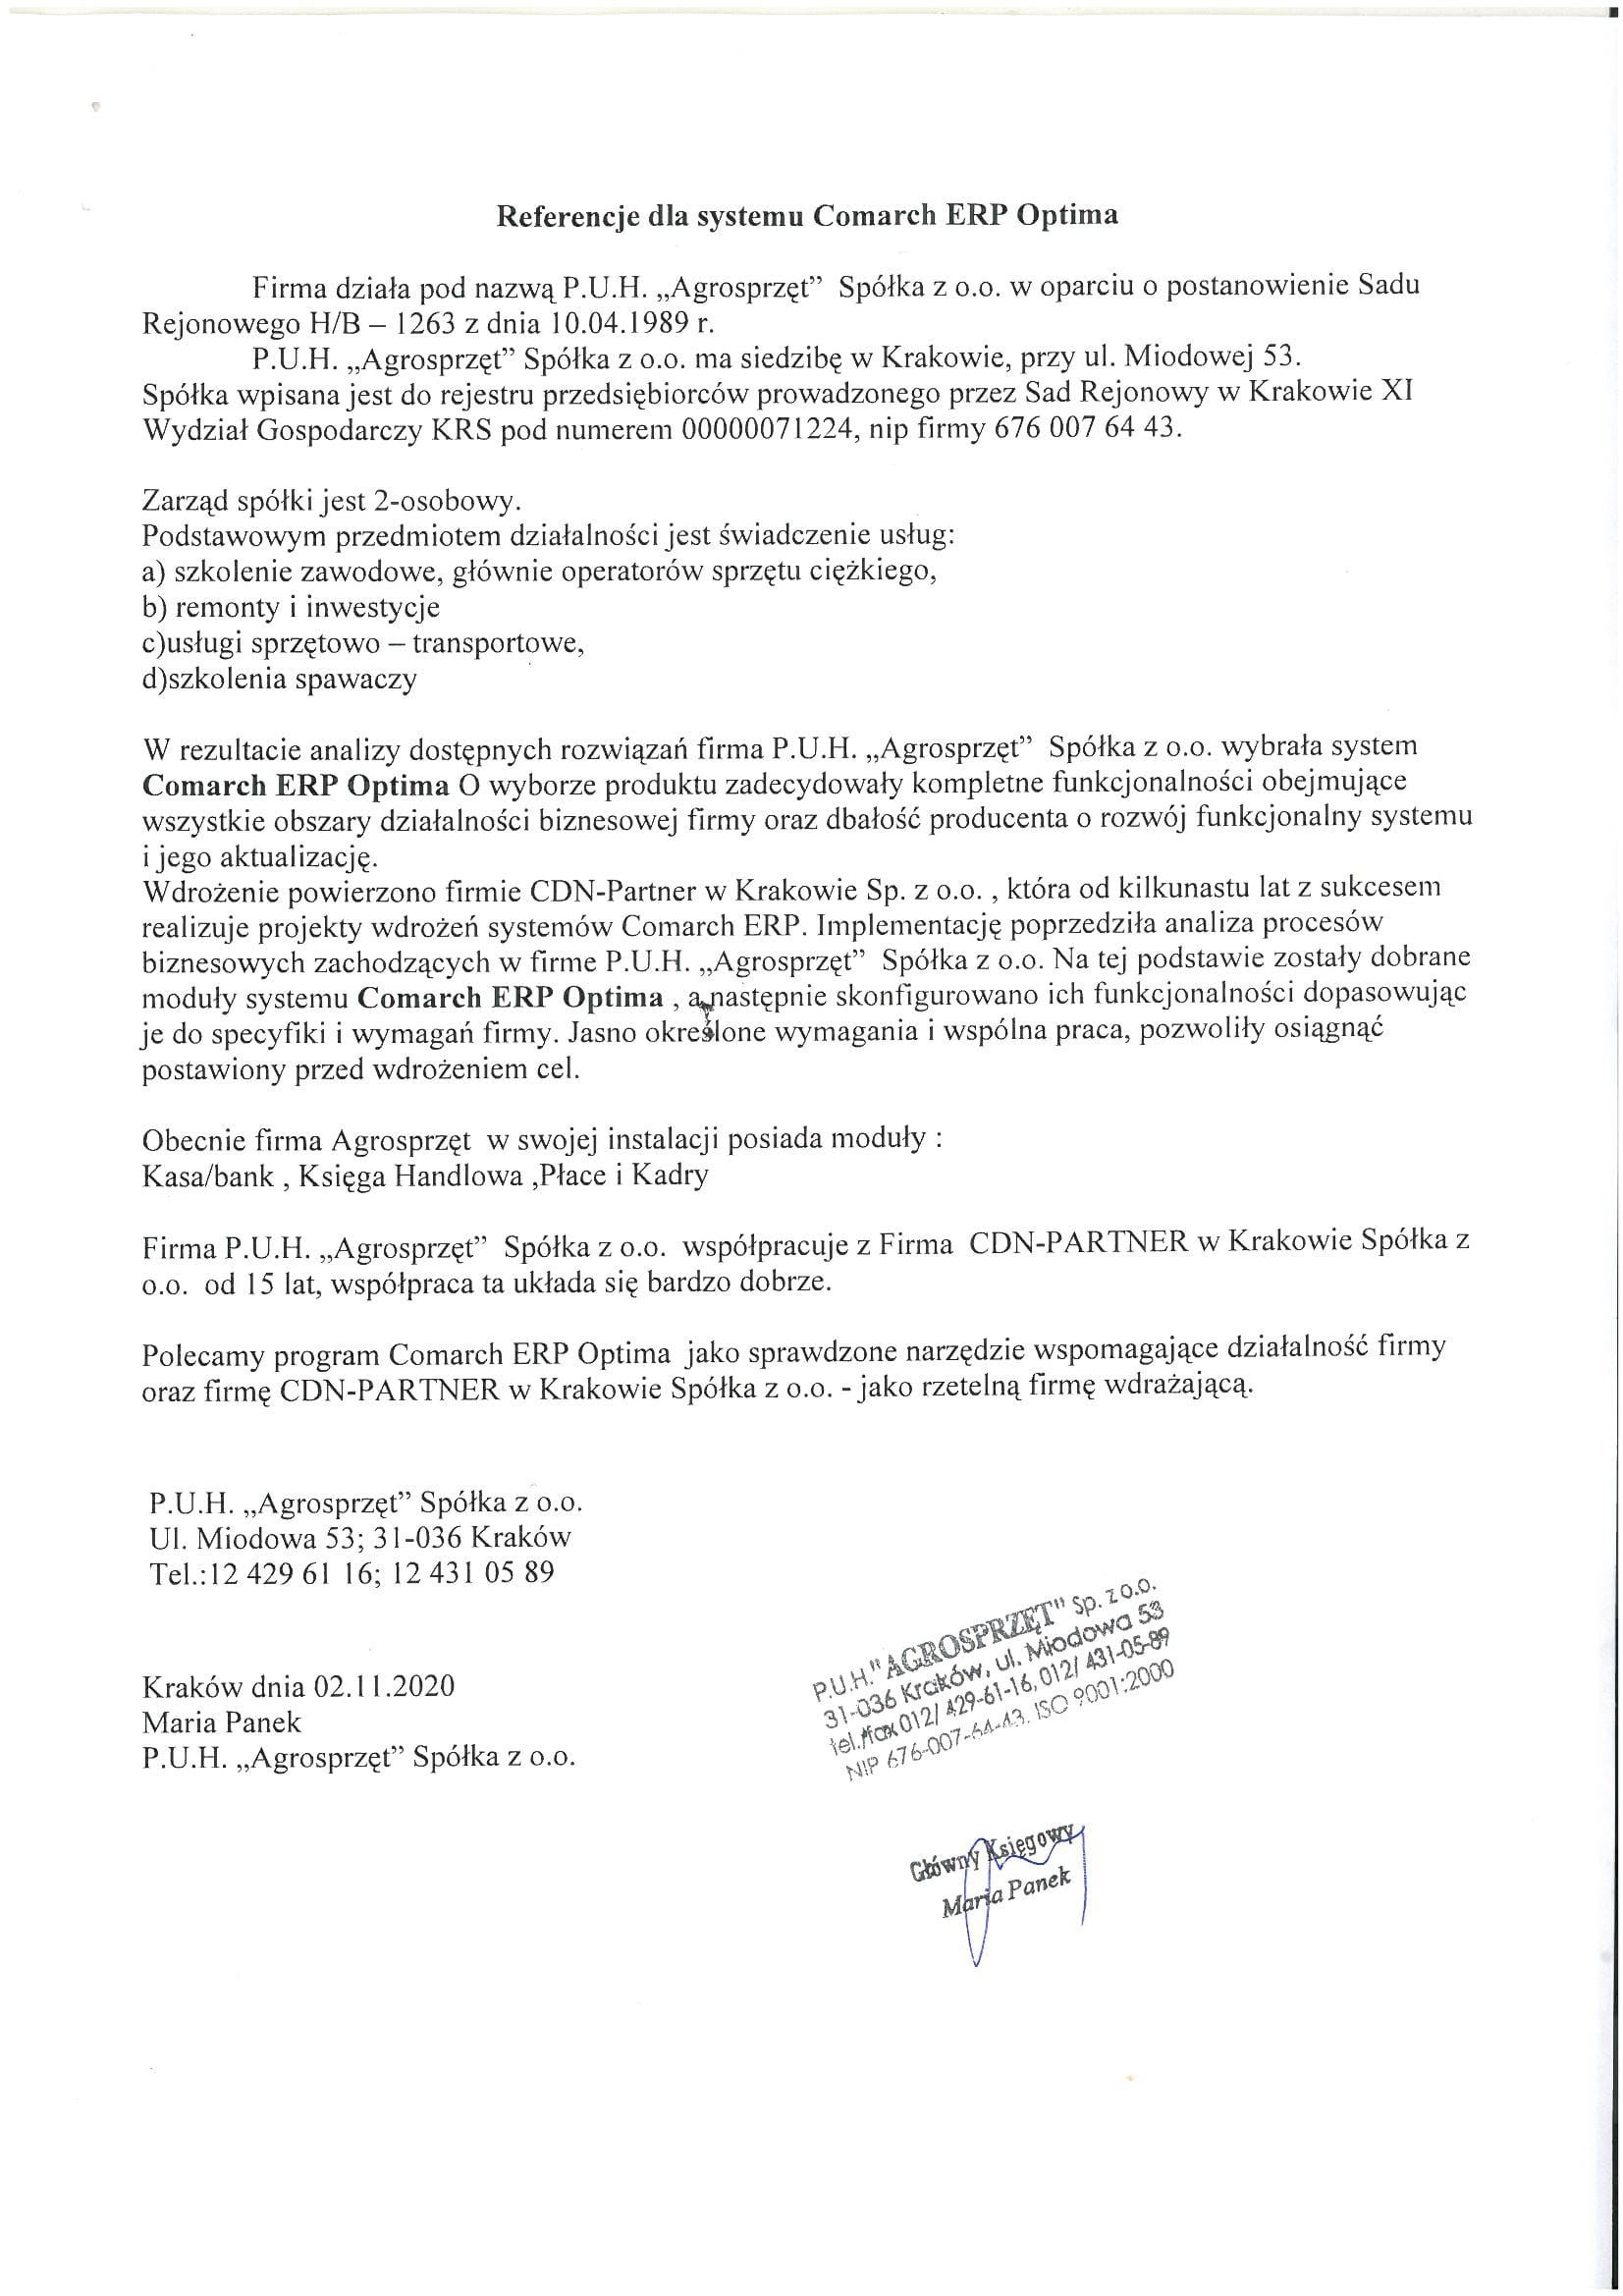 Referencje dla systemu Comarch ERP Optima i firmy CDN-Partner w Krakowie od firmy PUH Agrosprzęt